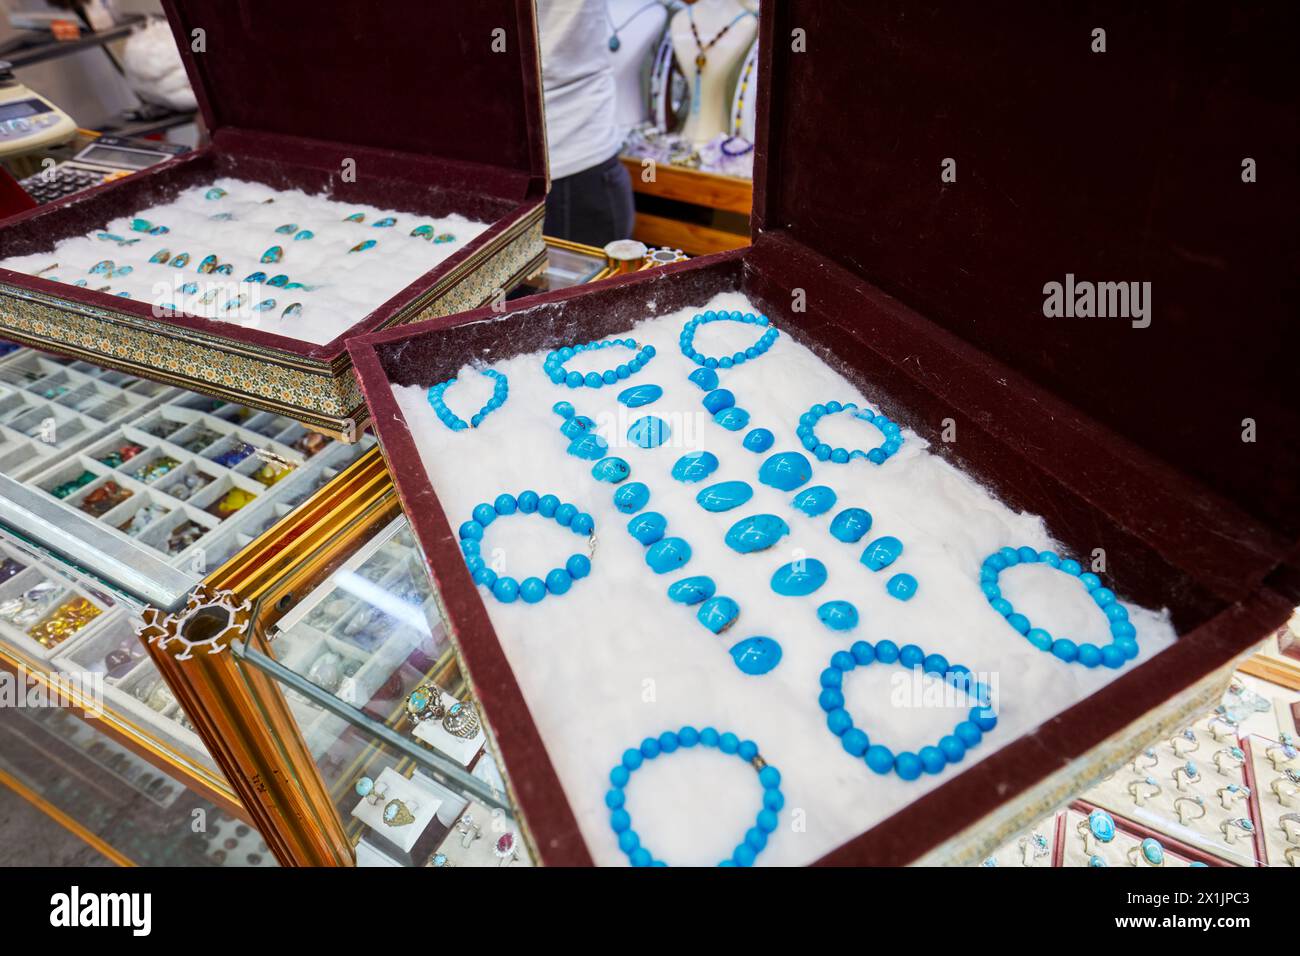 Eine Auswahl polierter persischer türkisfarbener Edelsteine in einem Juweliergeschäft in Isfahan, Iran. Stockfoto